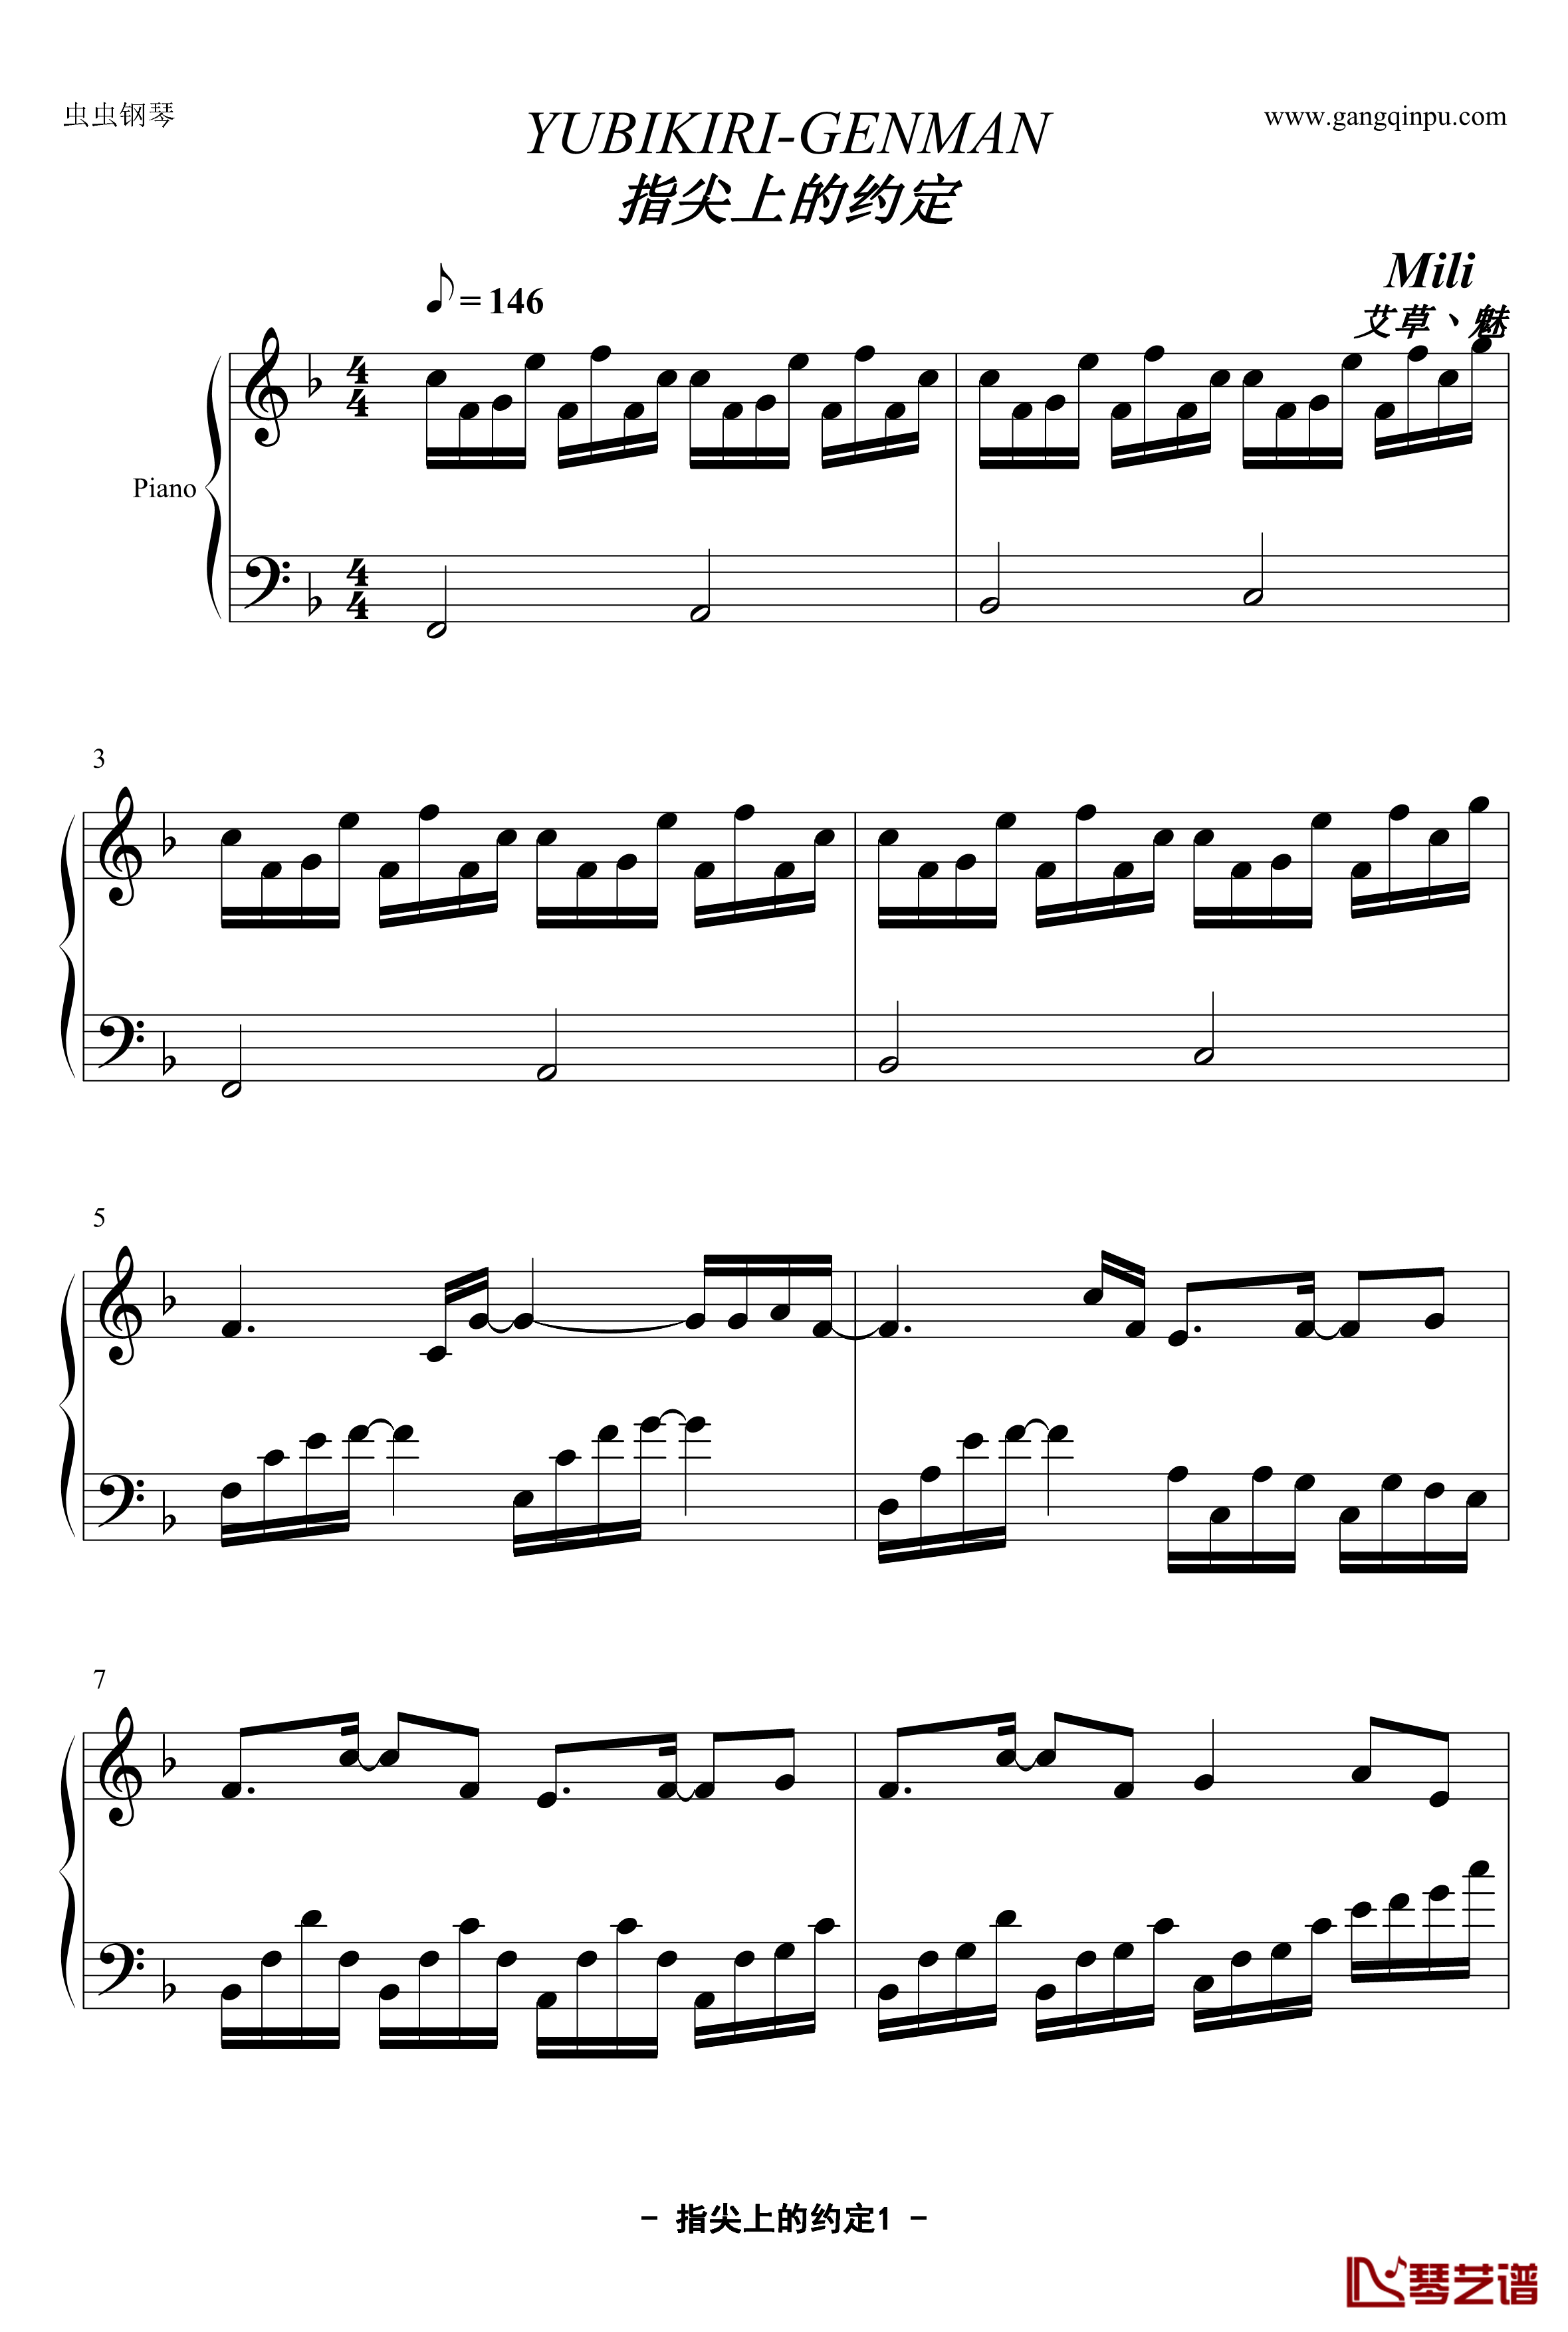 指尖上的约定钢琴谱-YUBIKIRI-GENMAN-Mili1